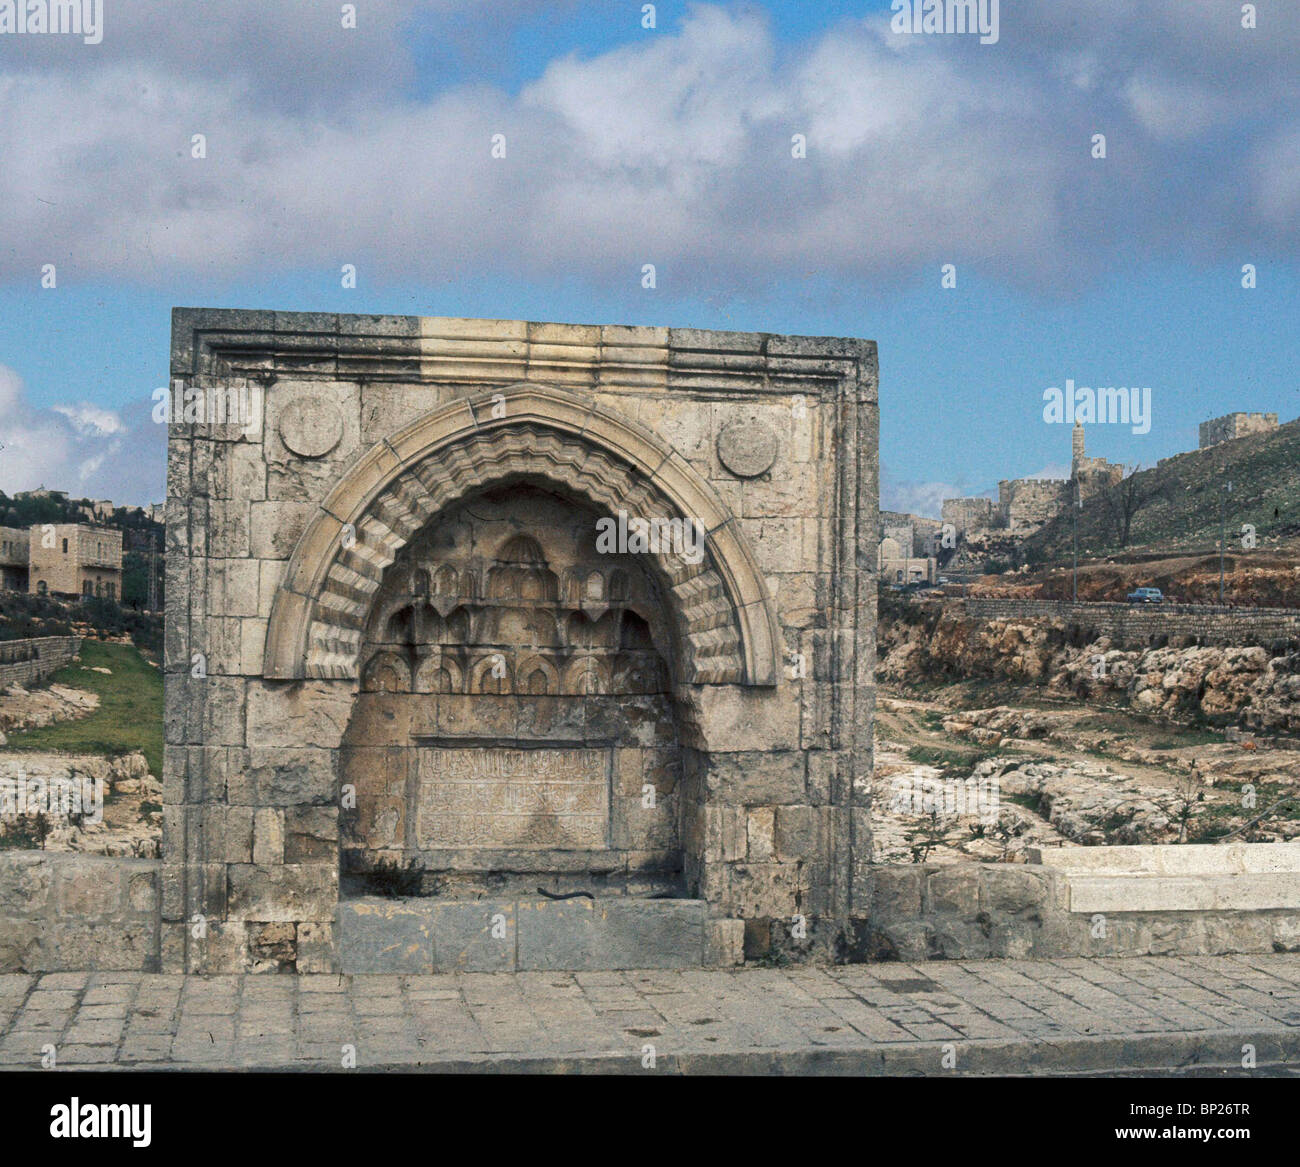 Jérusalem, 'SEBIL', fontaine à eau, construit par le sultan Soliman le Magnifique, au 16e. C. SITUÉ AU PIED DU MT. Sion Banque D'Images